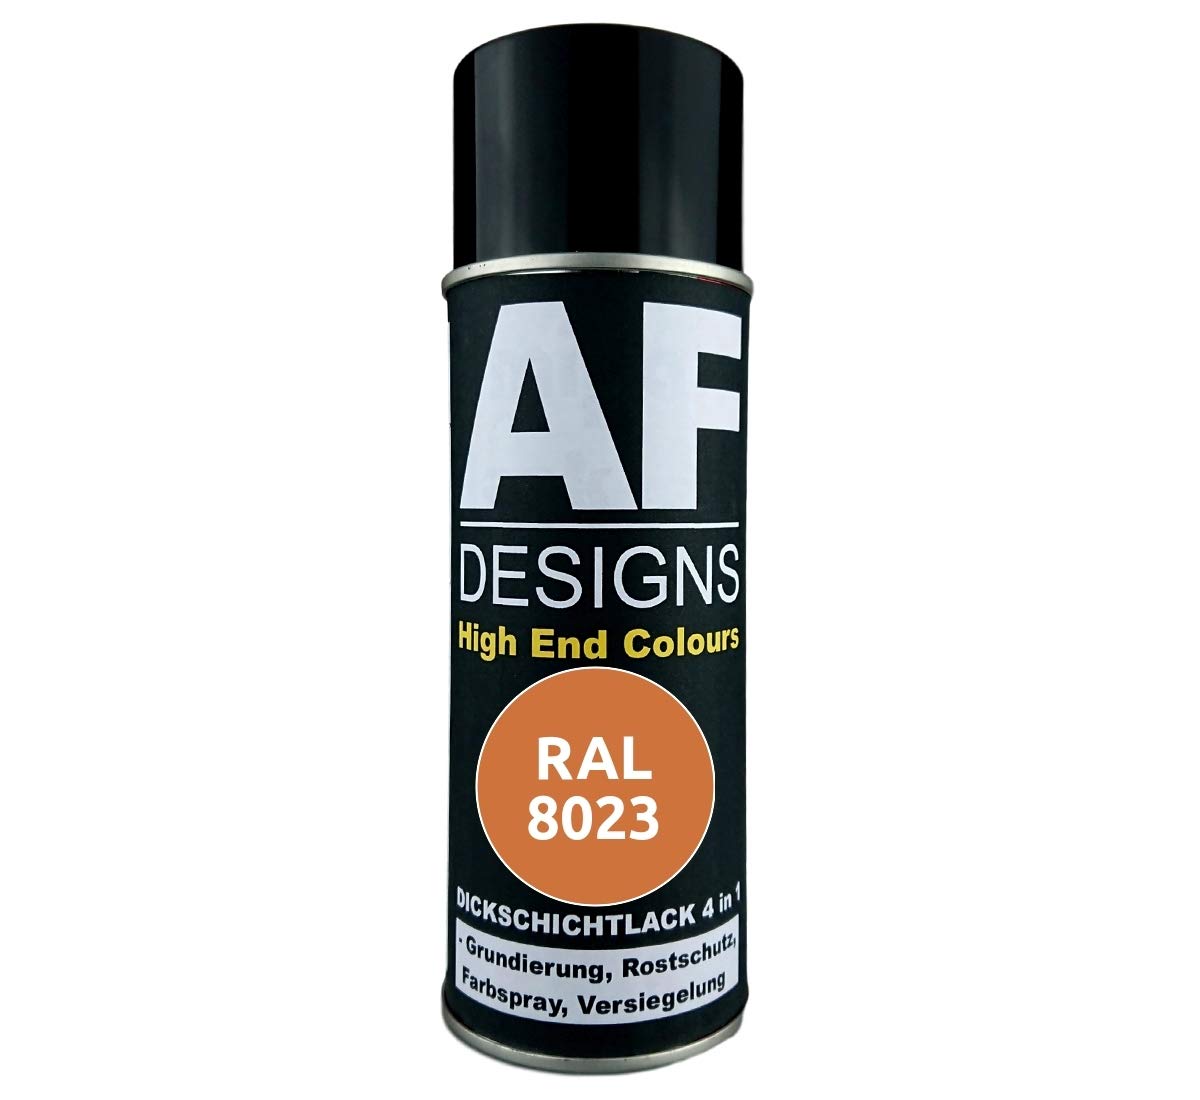 4 in 1 RAL 8023 Orangebraun Dickschichtlack Lack Spray Spraydose von Alex Flittner Designs